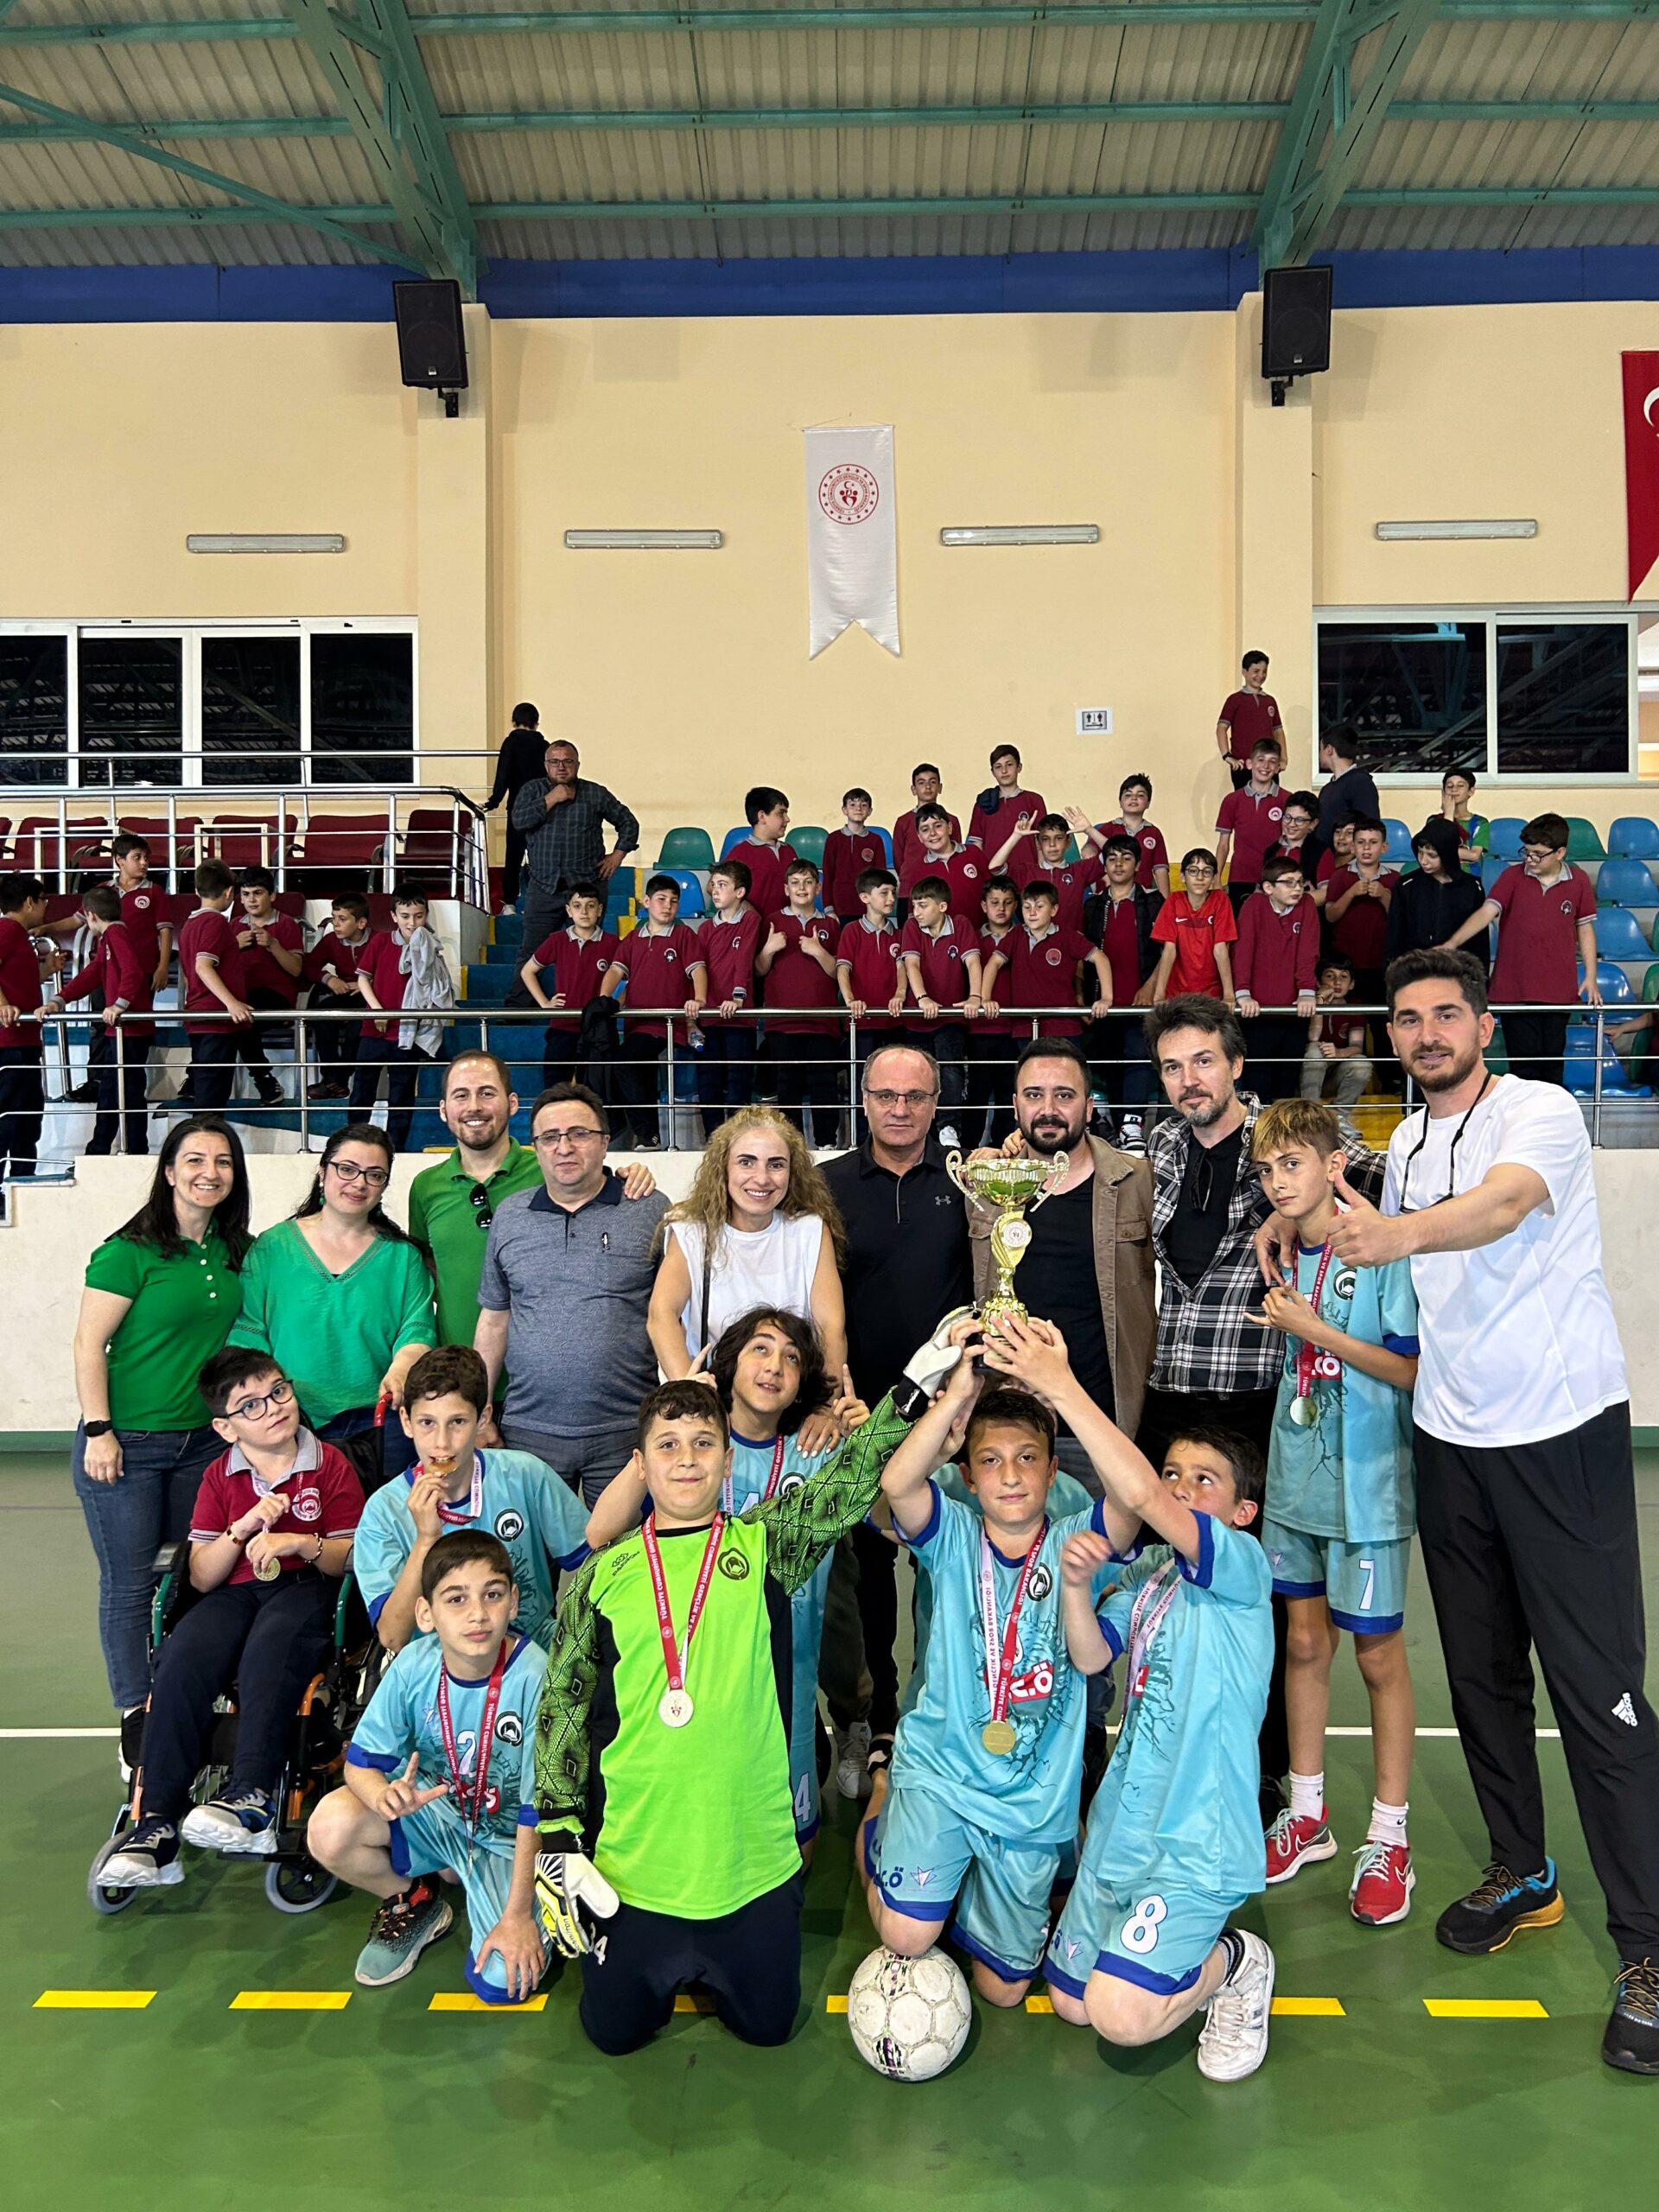 Rize’de okullar arası küçükler futsal turnuvasında, Mahmut Celalettin Ökten İmam Hatip Ortaokulu takımı şampiyon oldu.